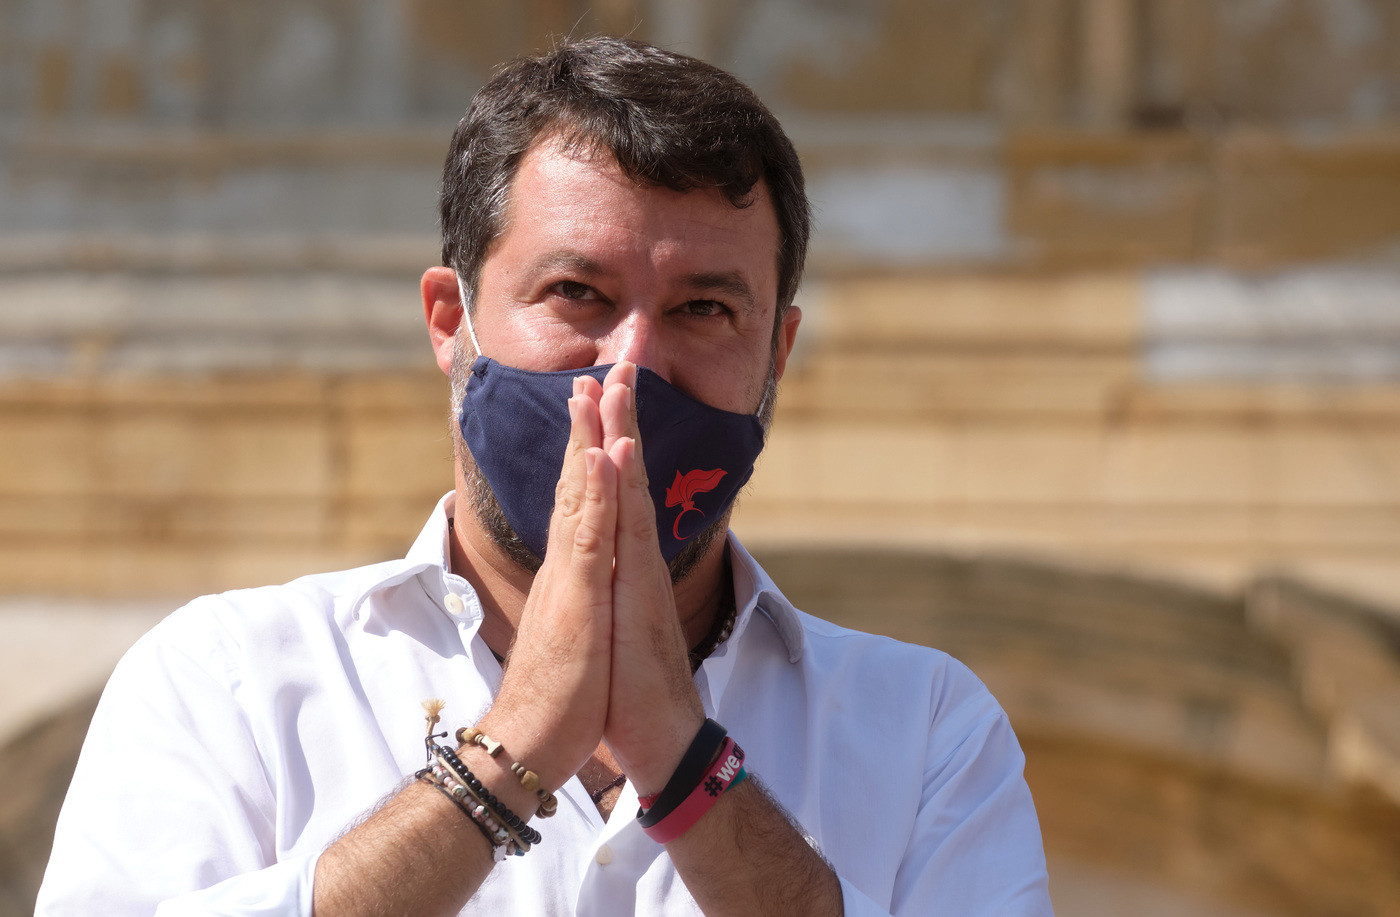 Caso Gregoretti, al via il processo a Salvini. La procura ha chiesto il prosciogliomento